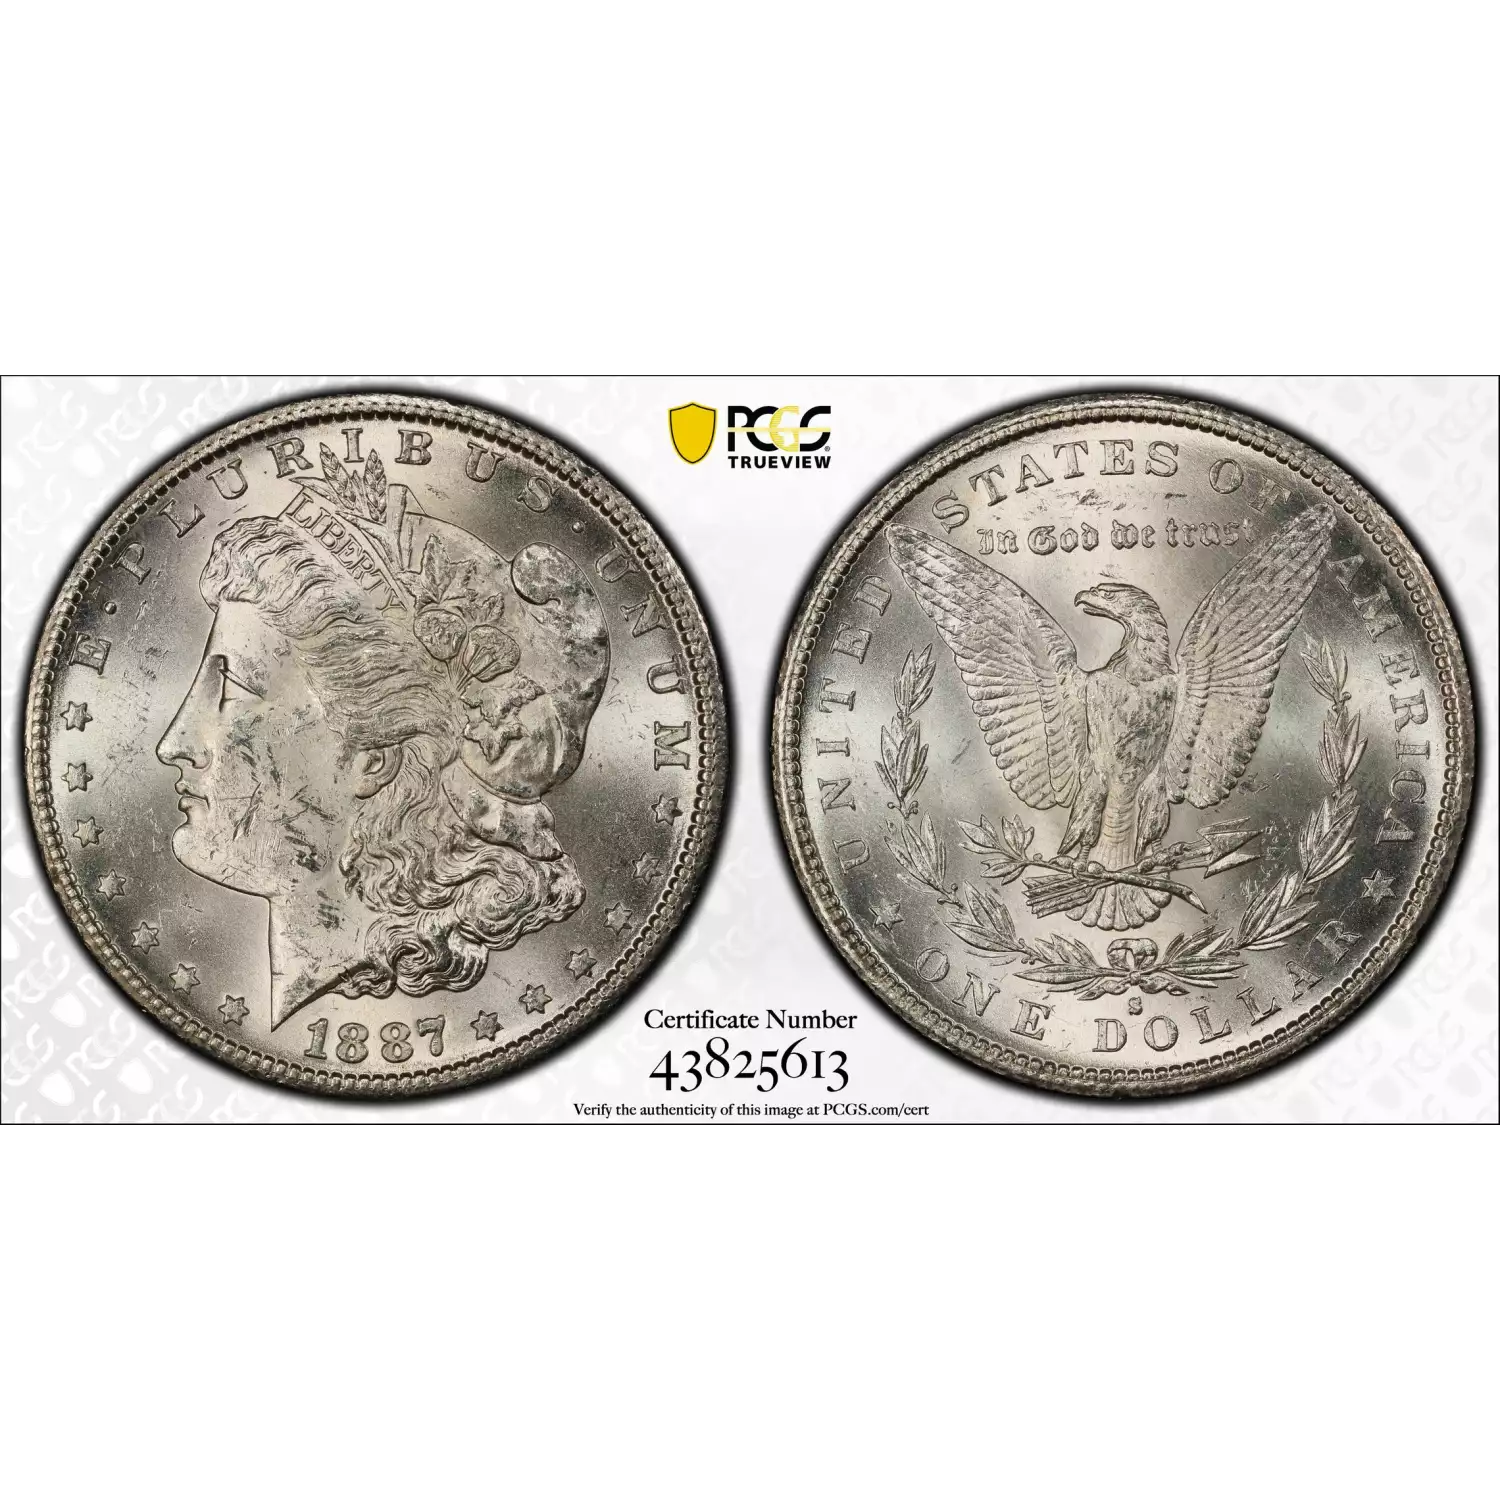 1887-S $1